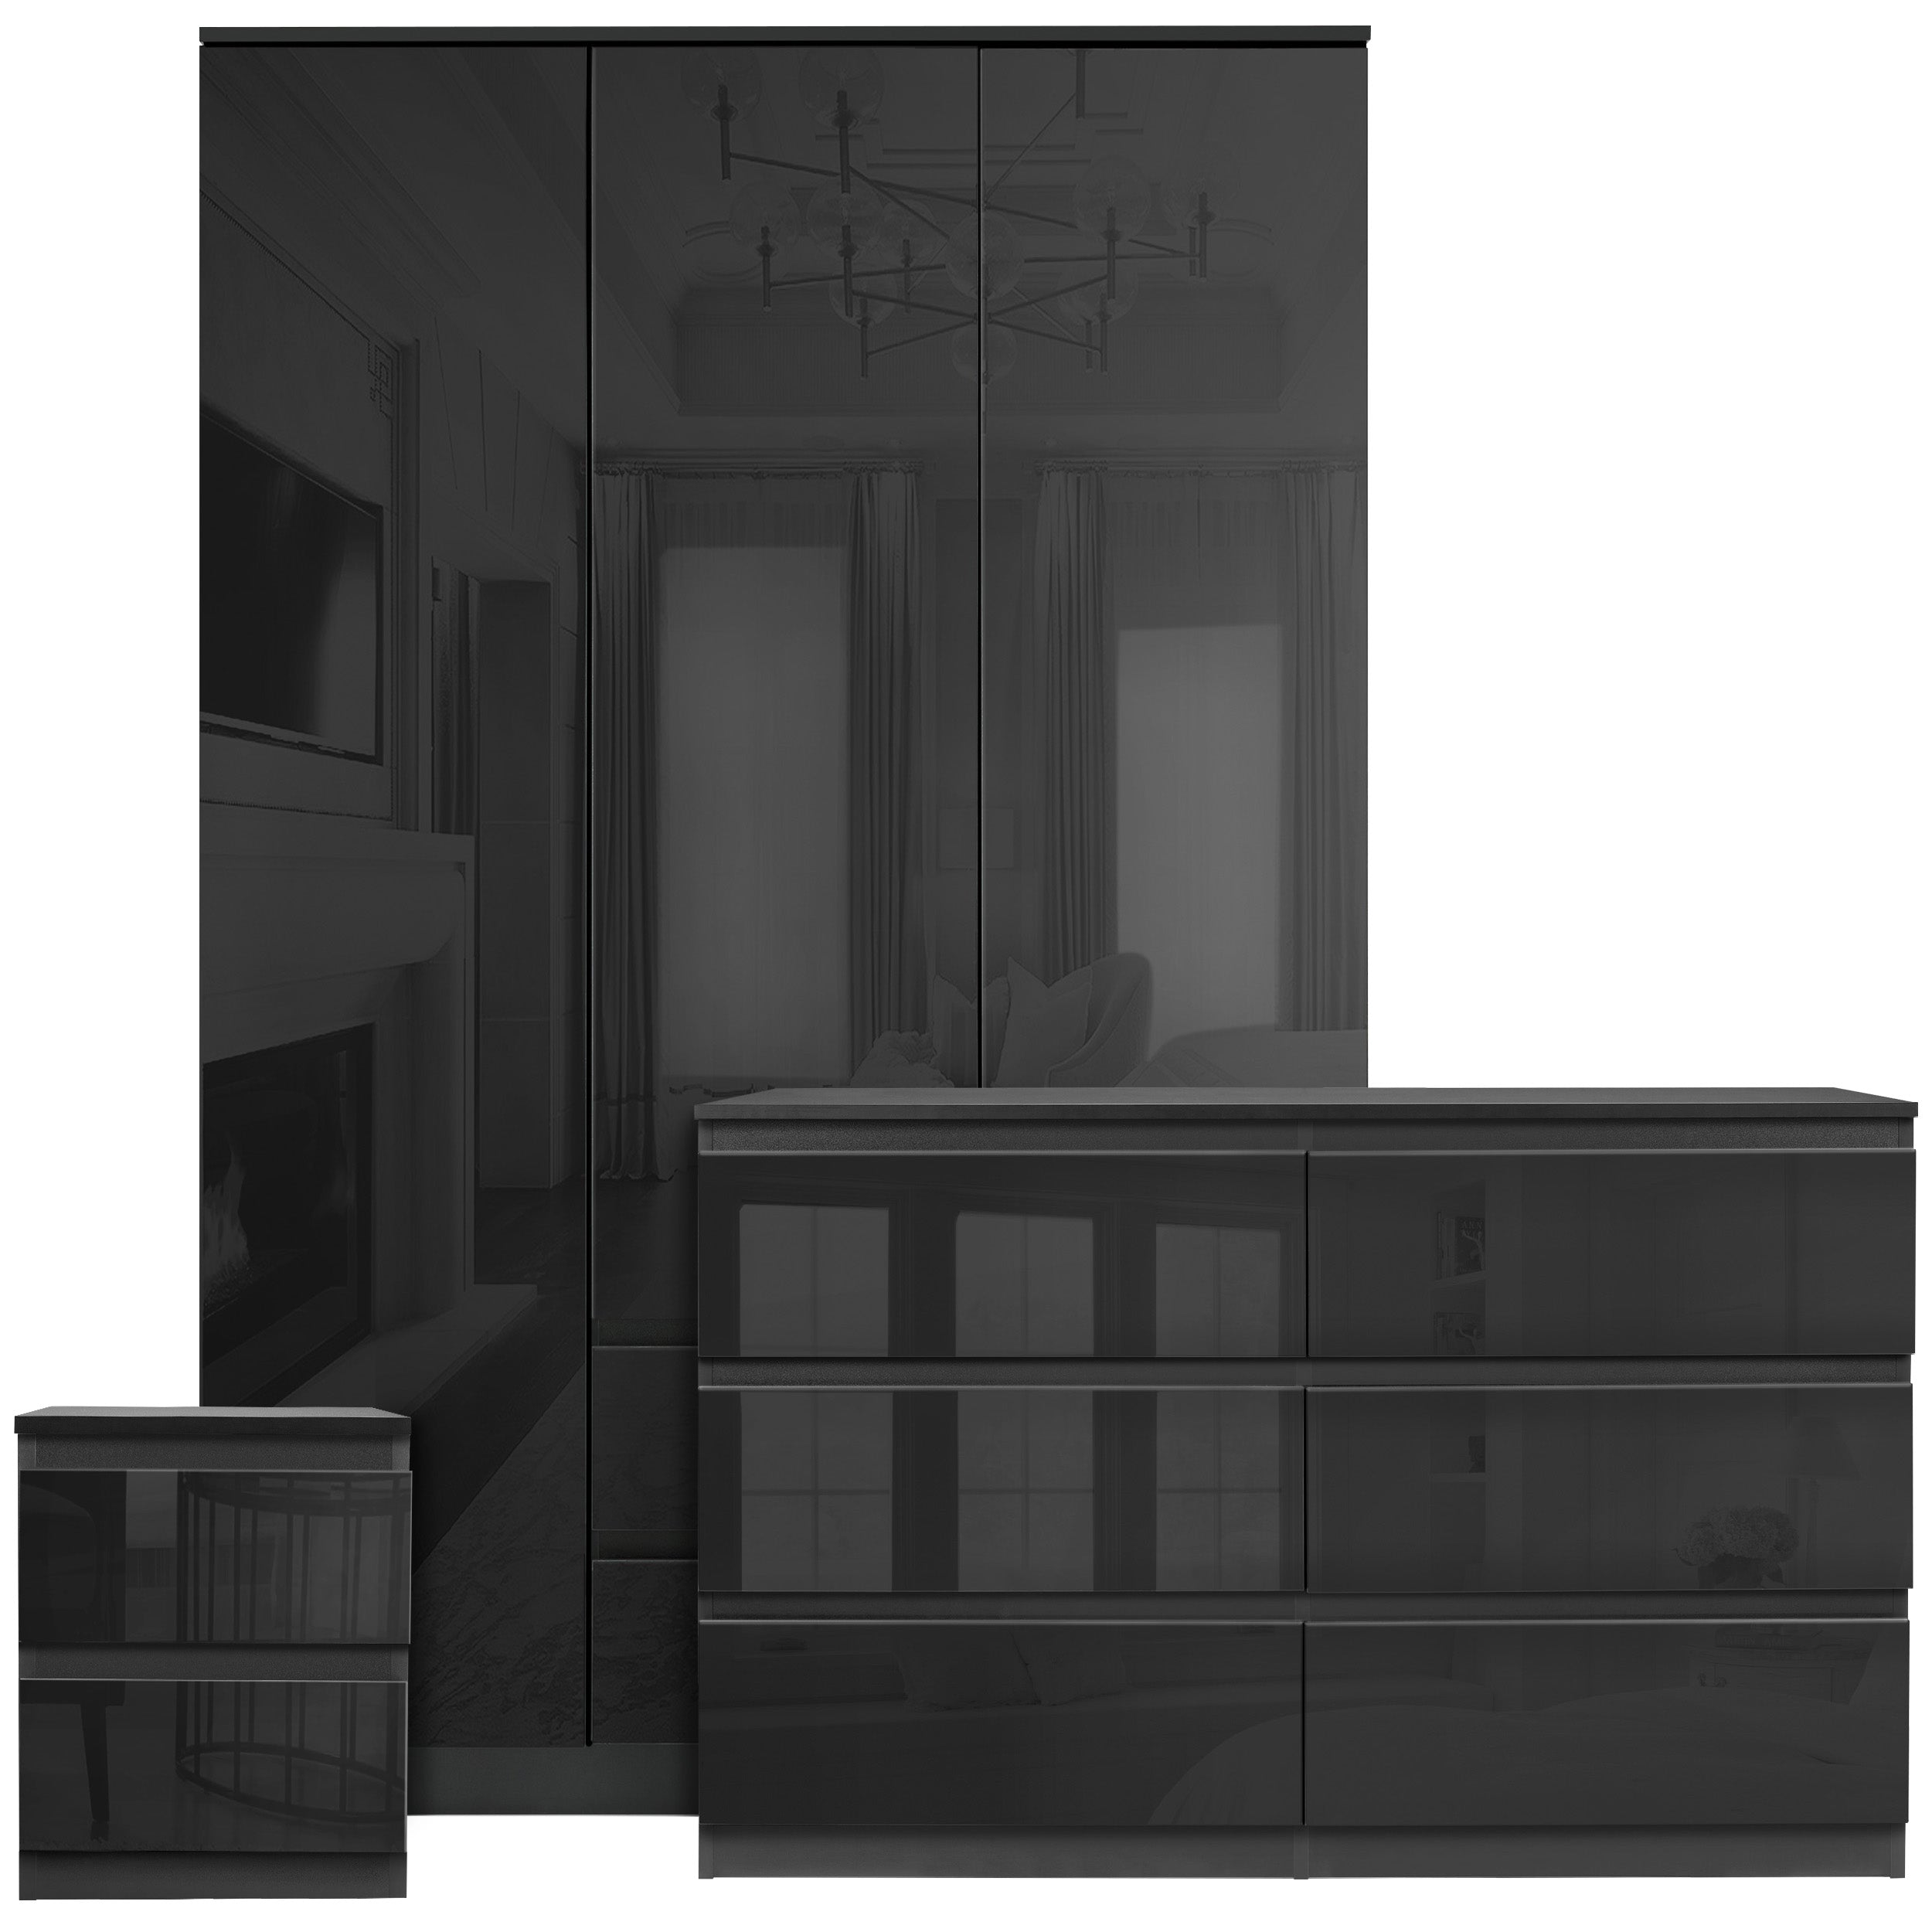 bedroom furniture set